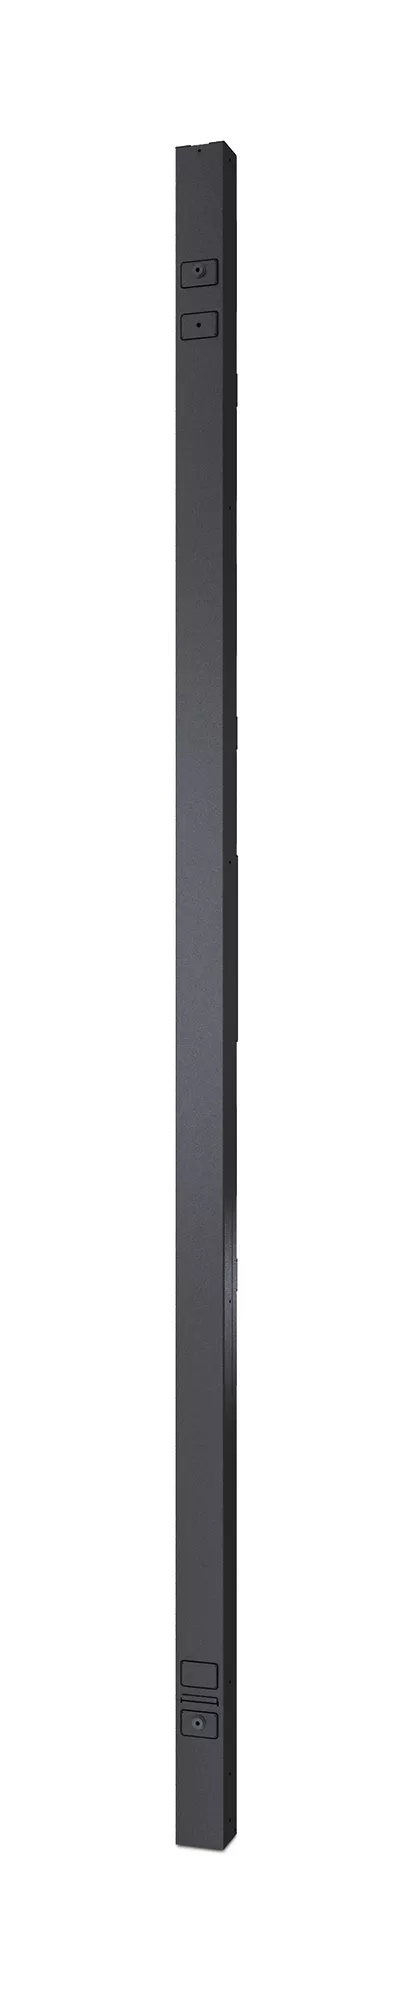 Vente APC Rack PDU 2G Metered-by-Outlet ZeroU 11.0kW 230V APC au meilleur prix - visuel 2